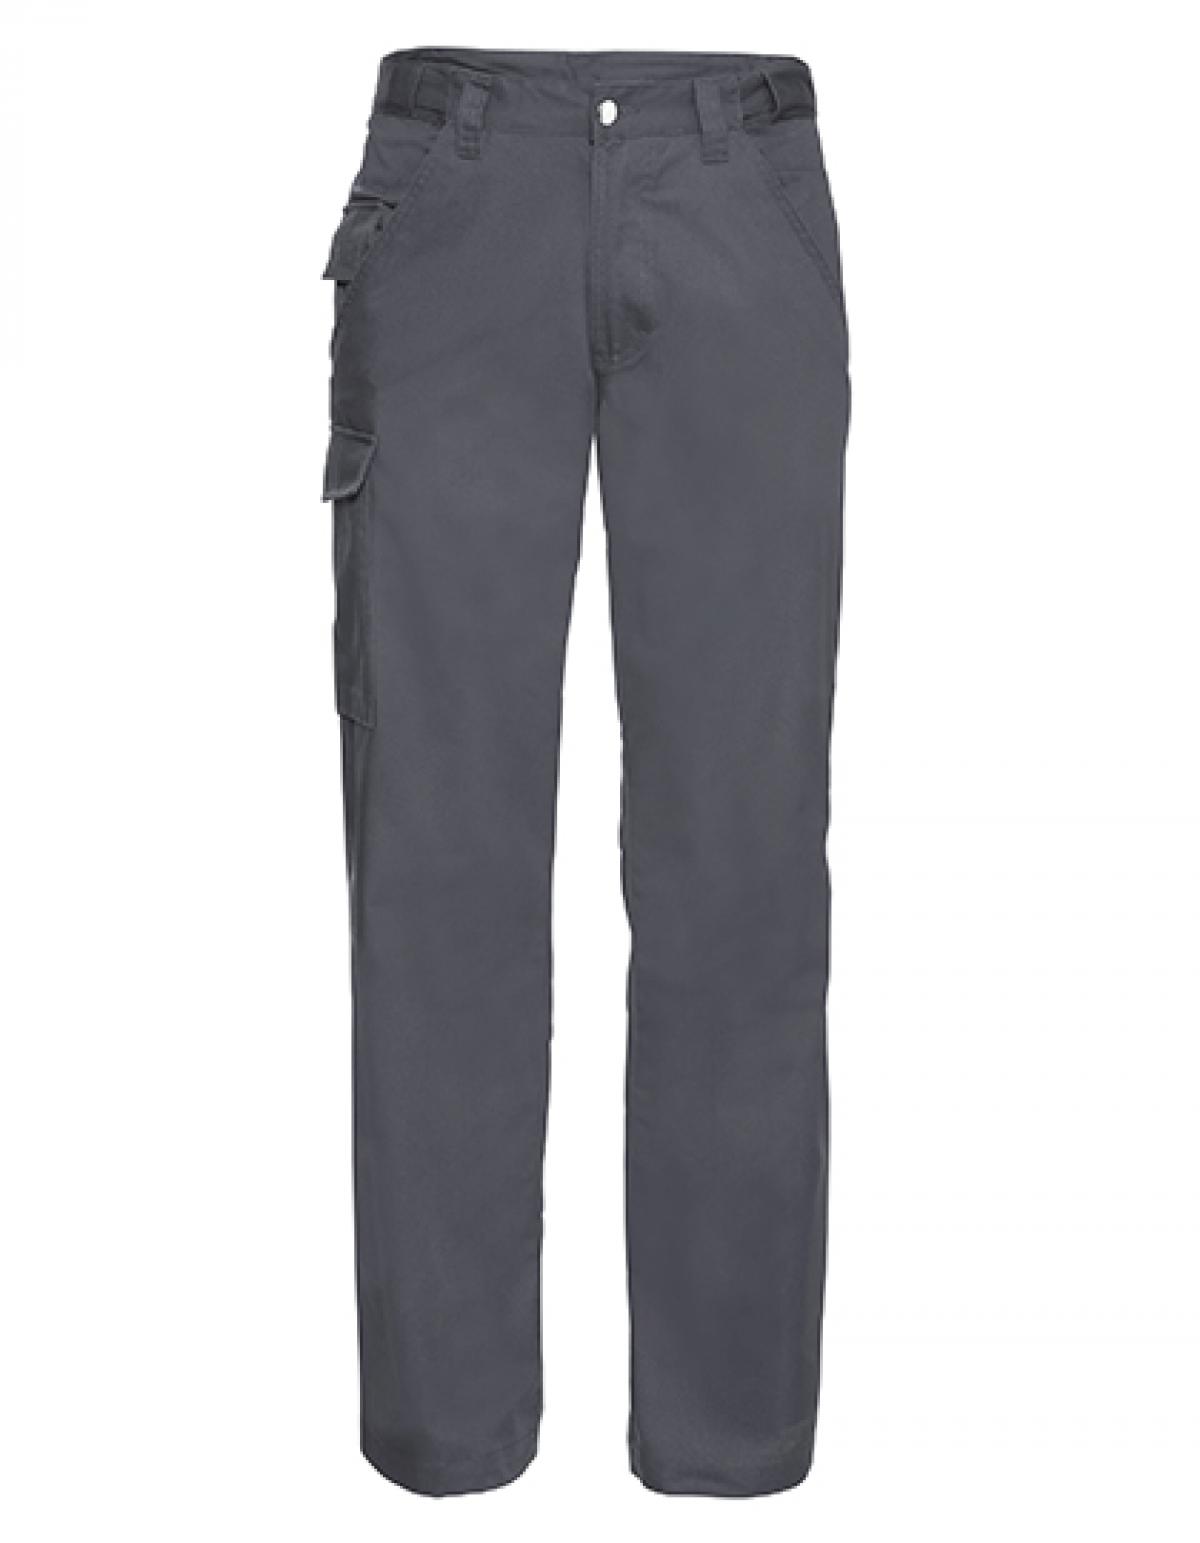 Indexbild 4 - Workwear-Hose aus Polyester-/Baumwoll-Twill | Russell